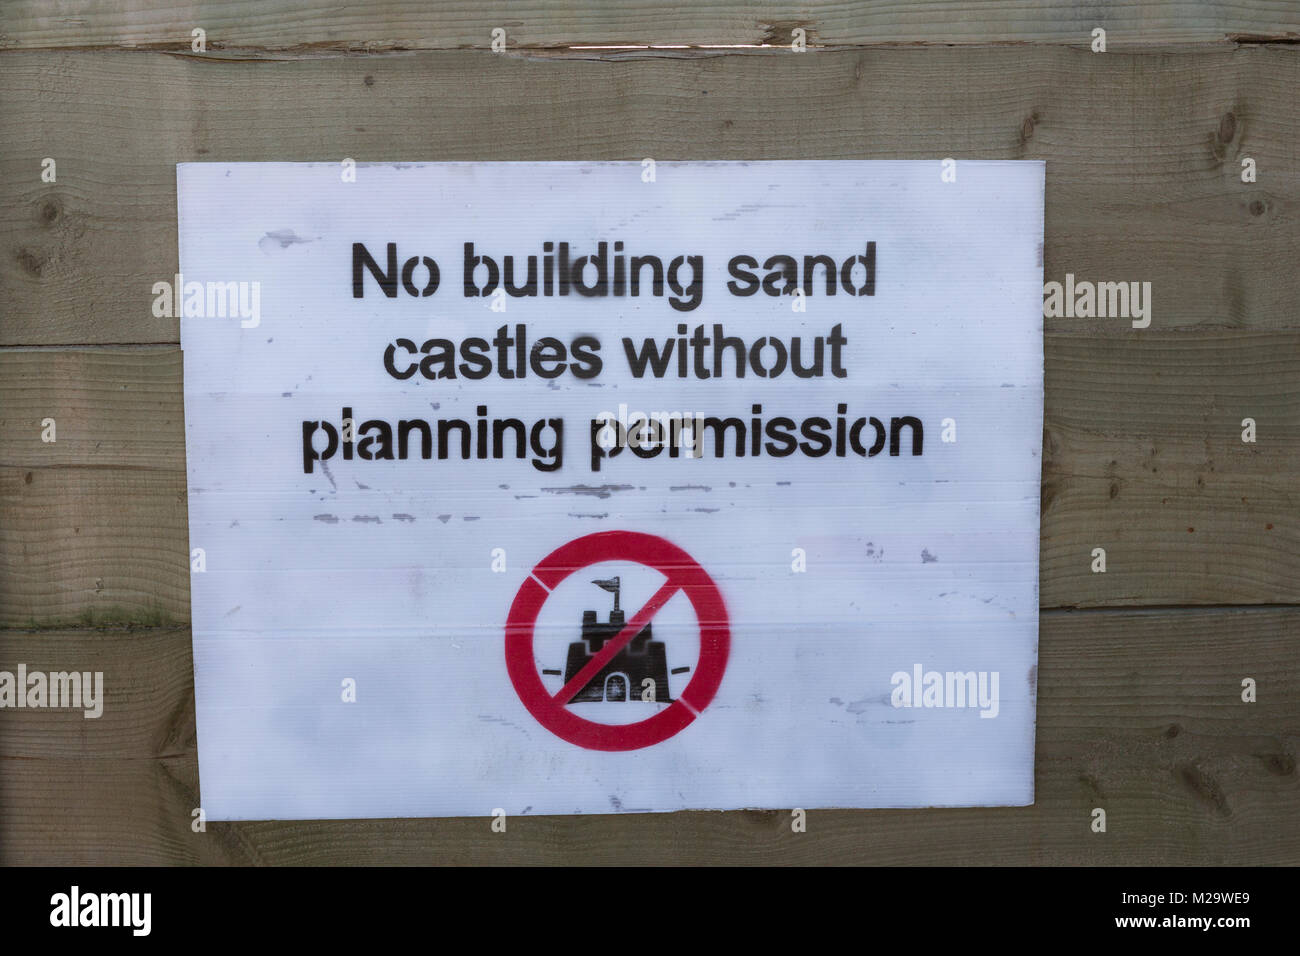 Lustiger witz Schild am Strand an der Swansea sagen keine Sandburgen bauen ohne Baugenehmigung Stockfoto